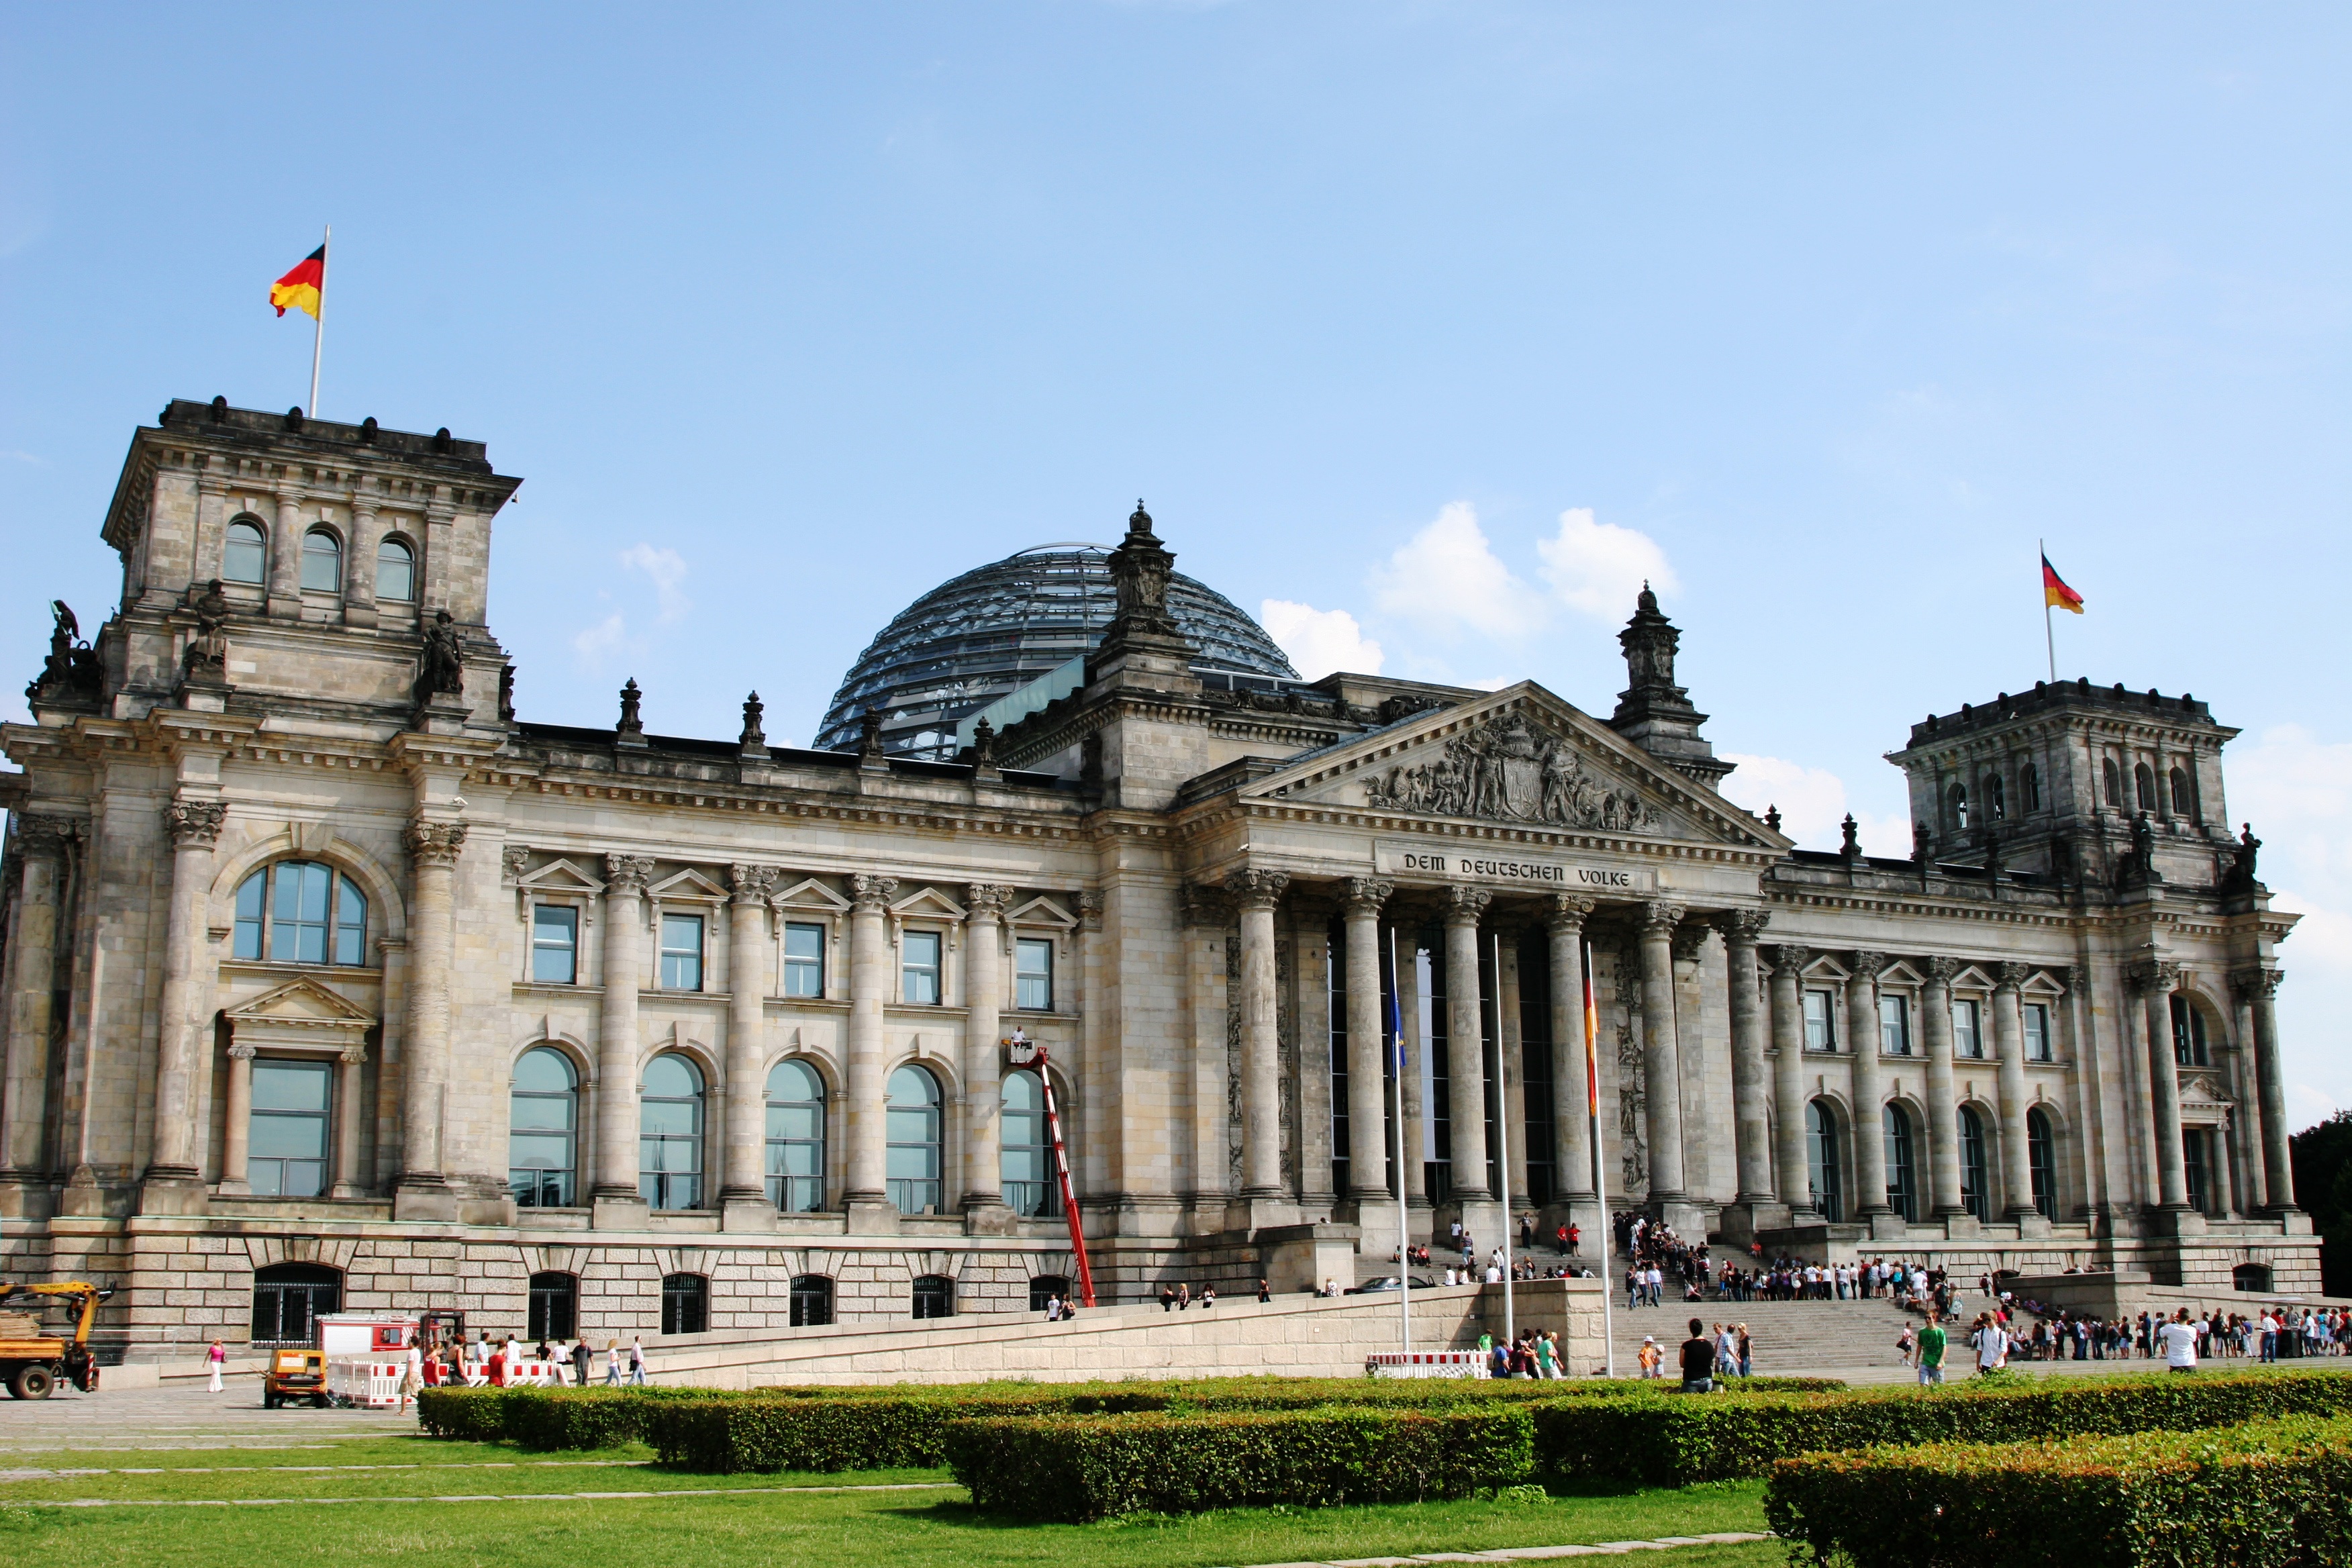 Tòa nhà chính phủ Reichstag - Reichstag Building - Berlin - Đức